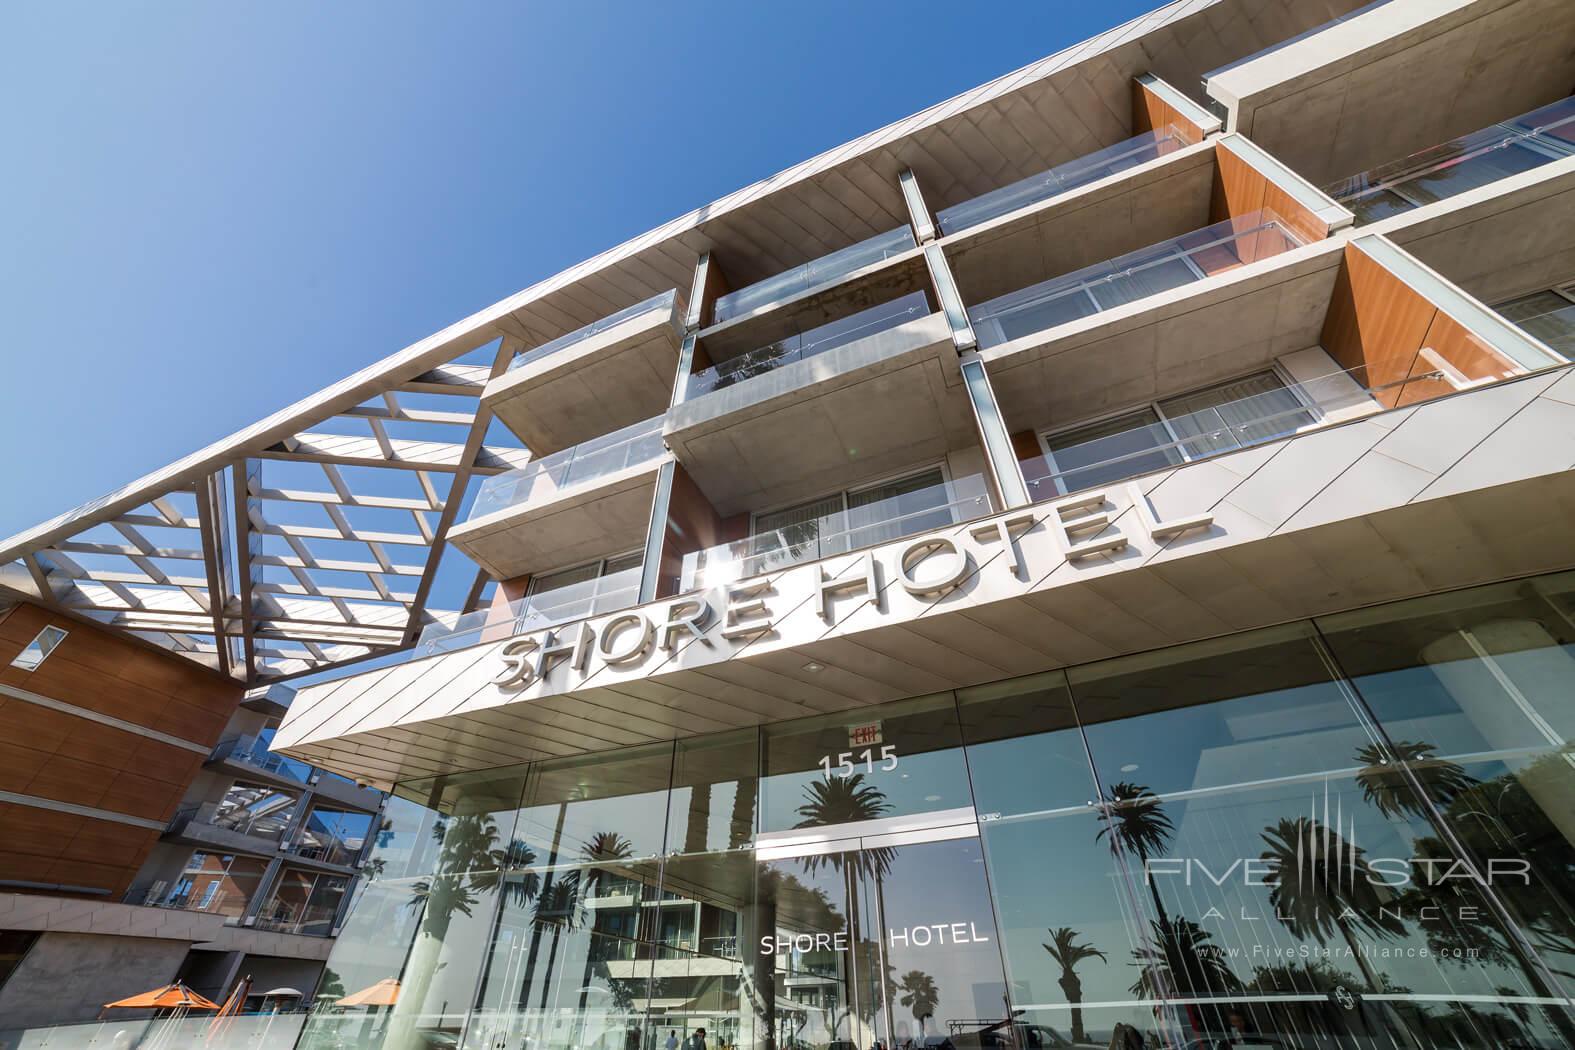 Shore Hotel Santa Monica, United States